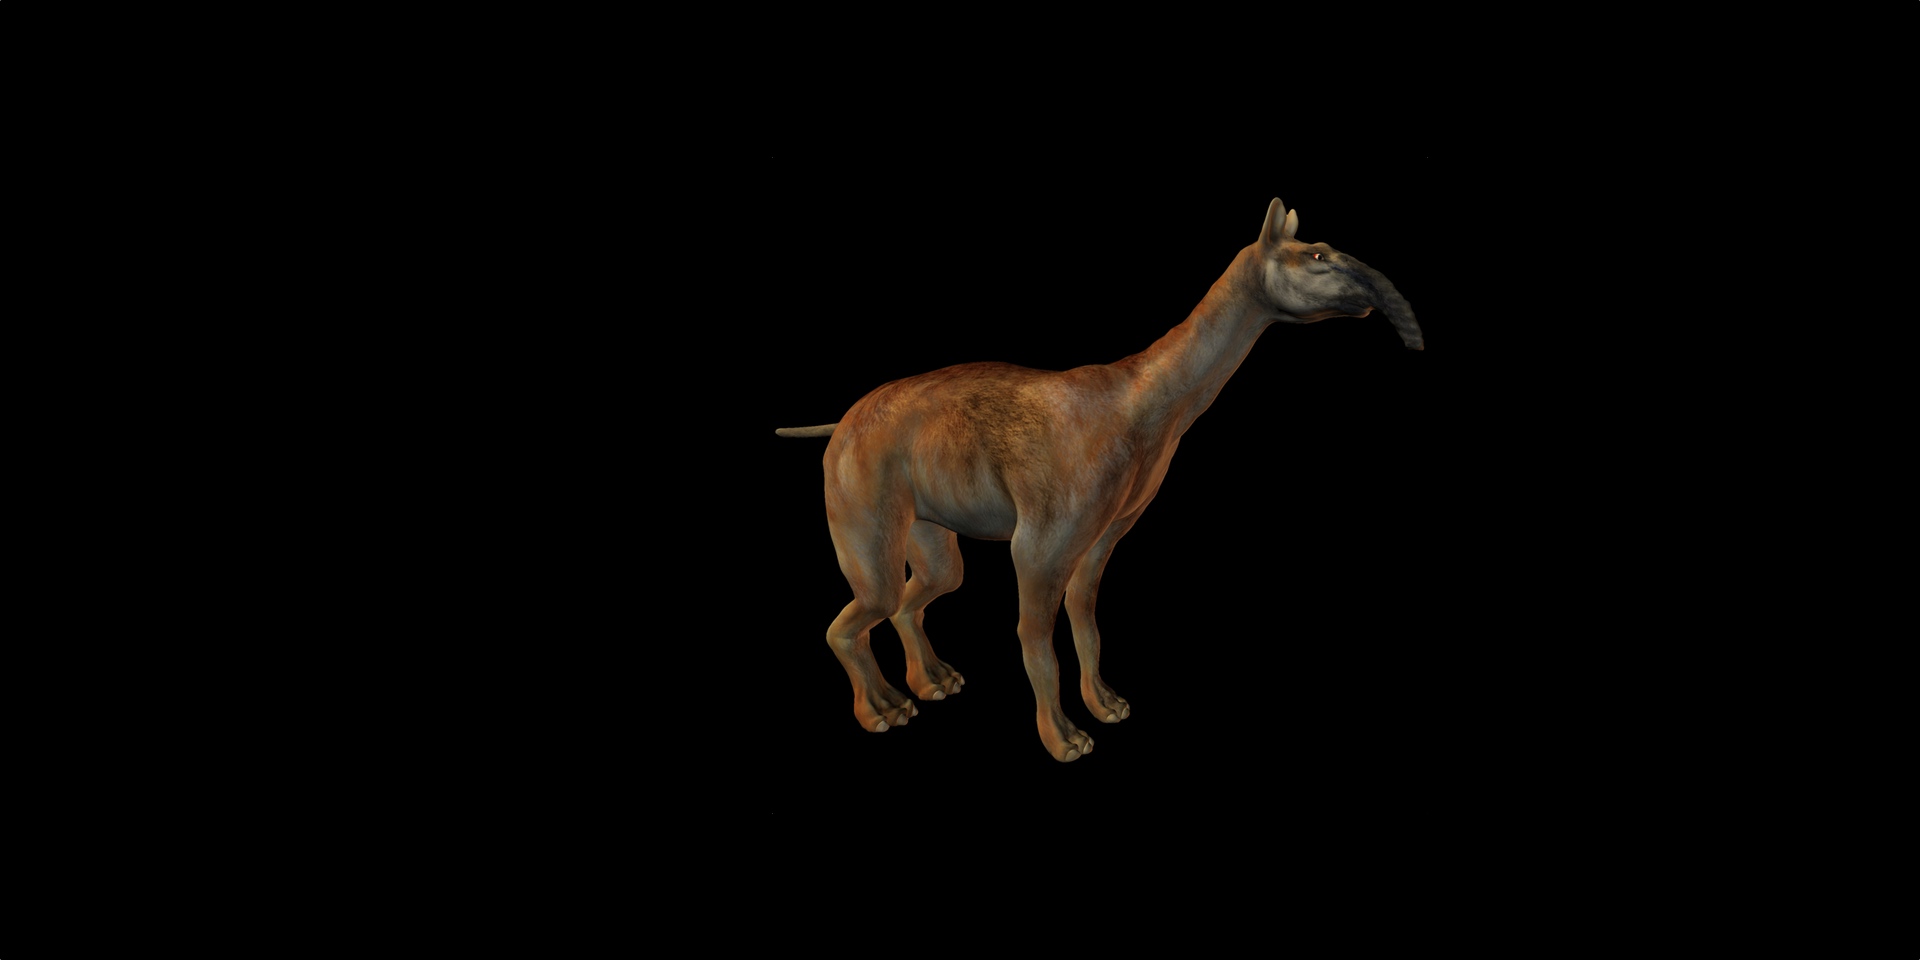 Le Macrauchenia patachonica avait un long cou qui, bien qu'il évoque la girafe, n'en était pas un cousin proche. © Andreas Meyer, fotolia